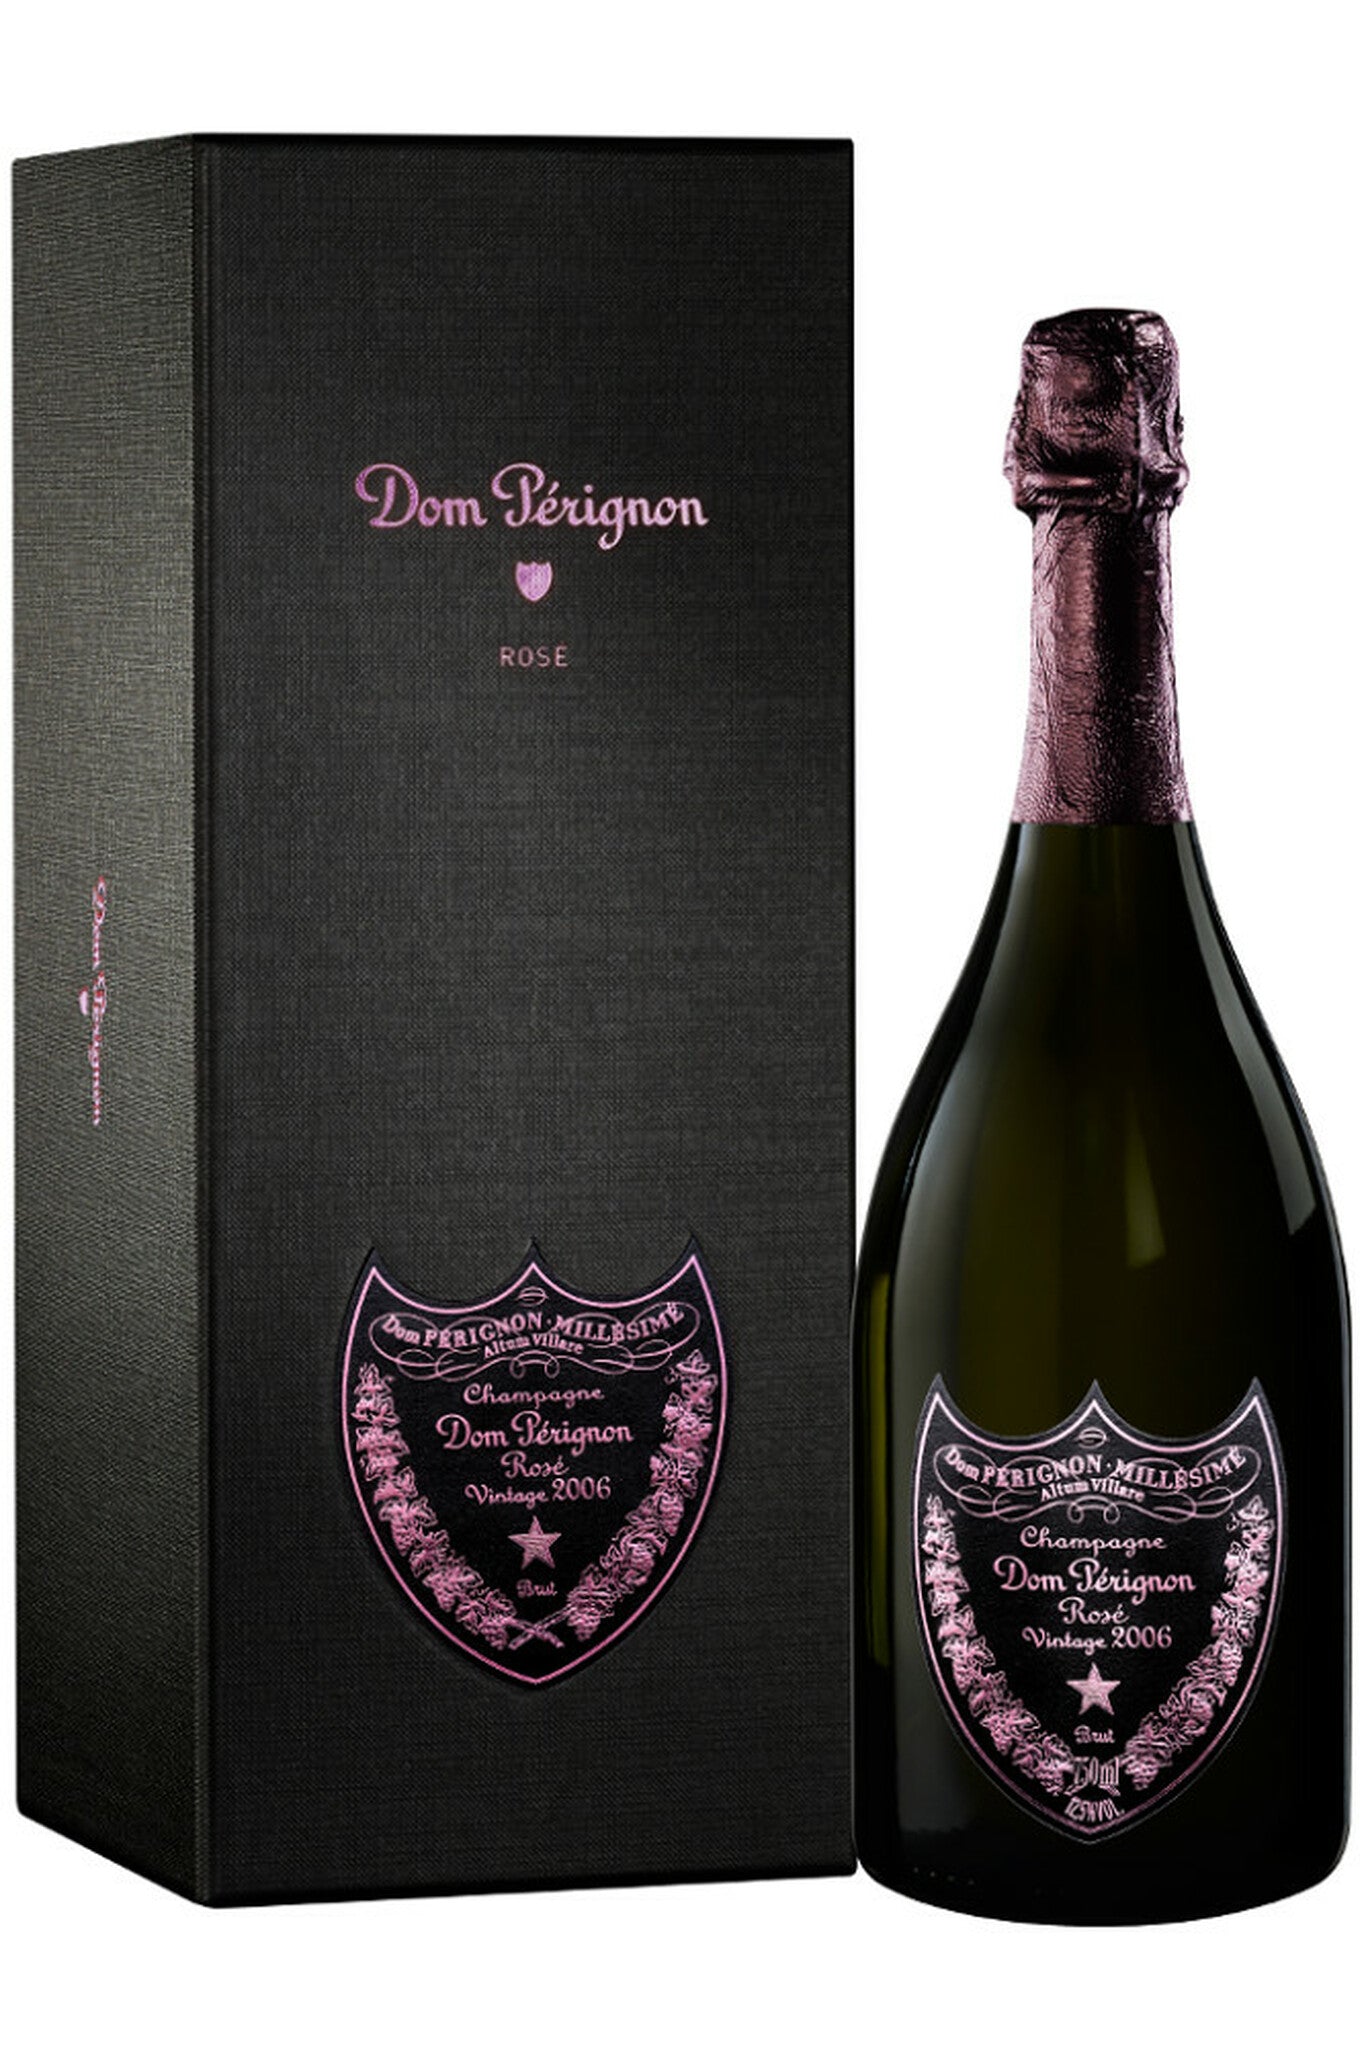 2008 Dom Perignon Rose (Gift Box)